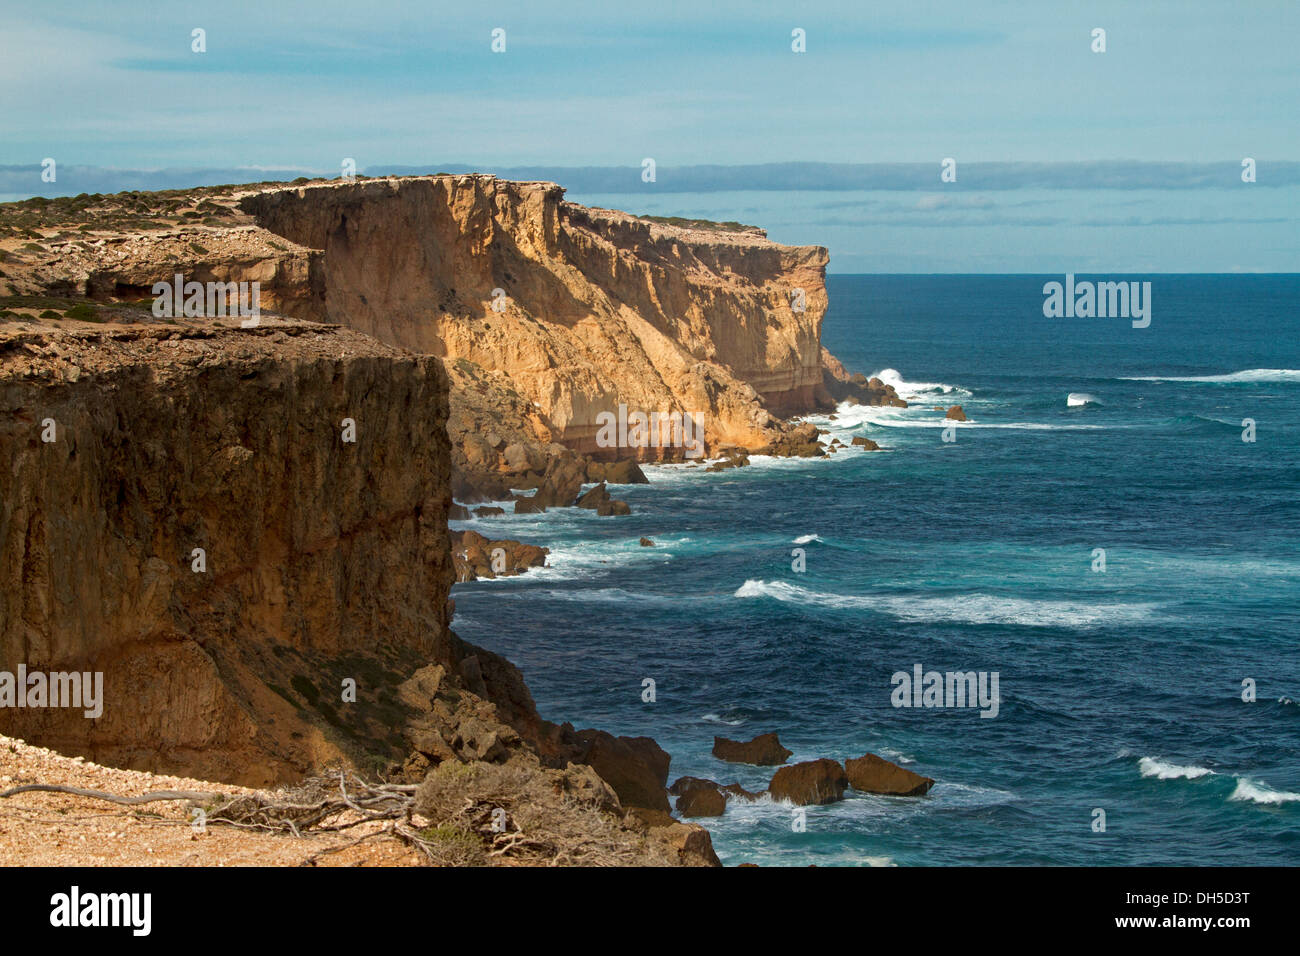 Hautes falaises et des eaux bleu turquoise de l'océan du sud, près de Point Labatt colonie de phoques sur la péninsule d'Eyre en Australie-Méridionale Banque D'Images